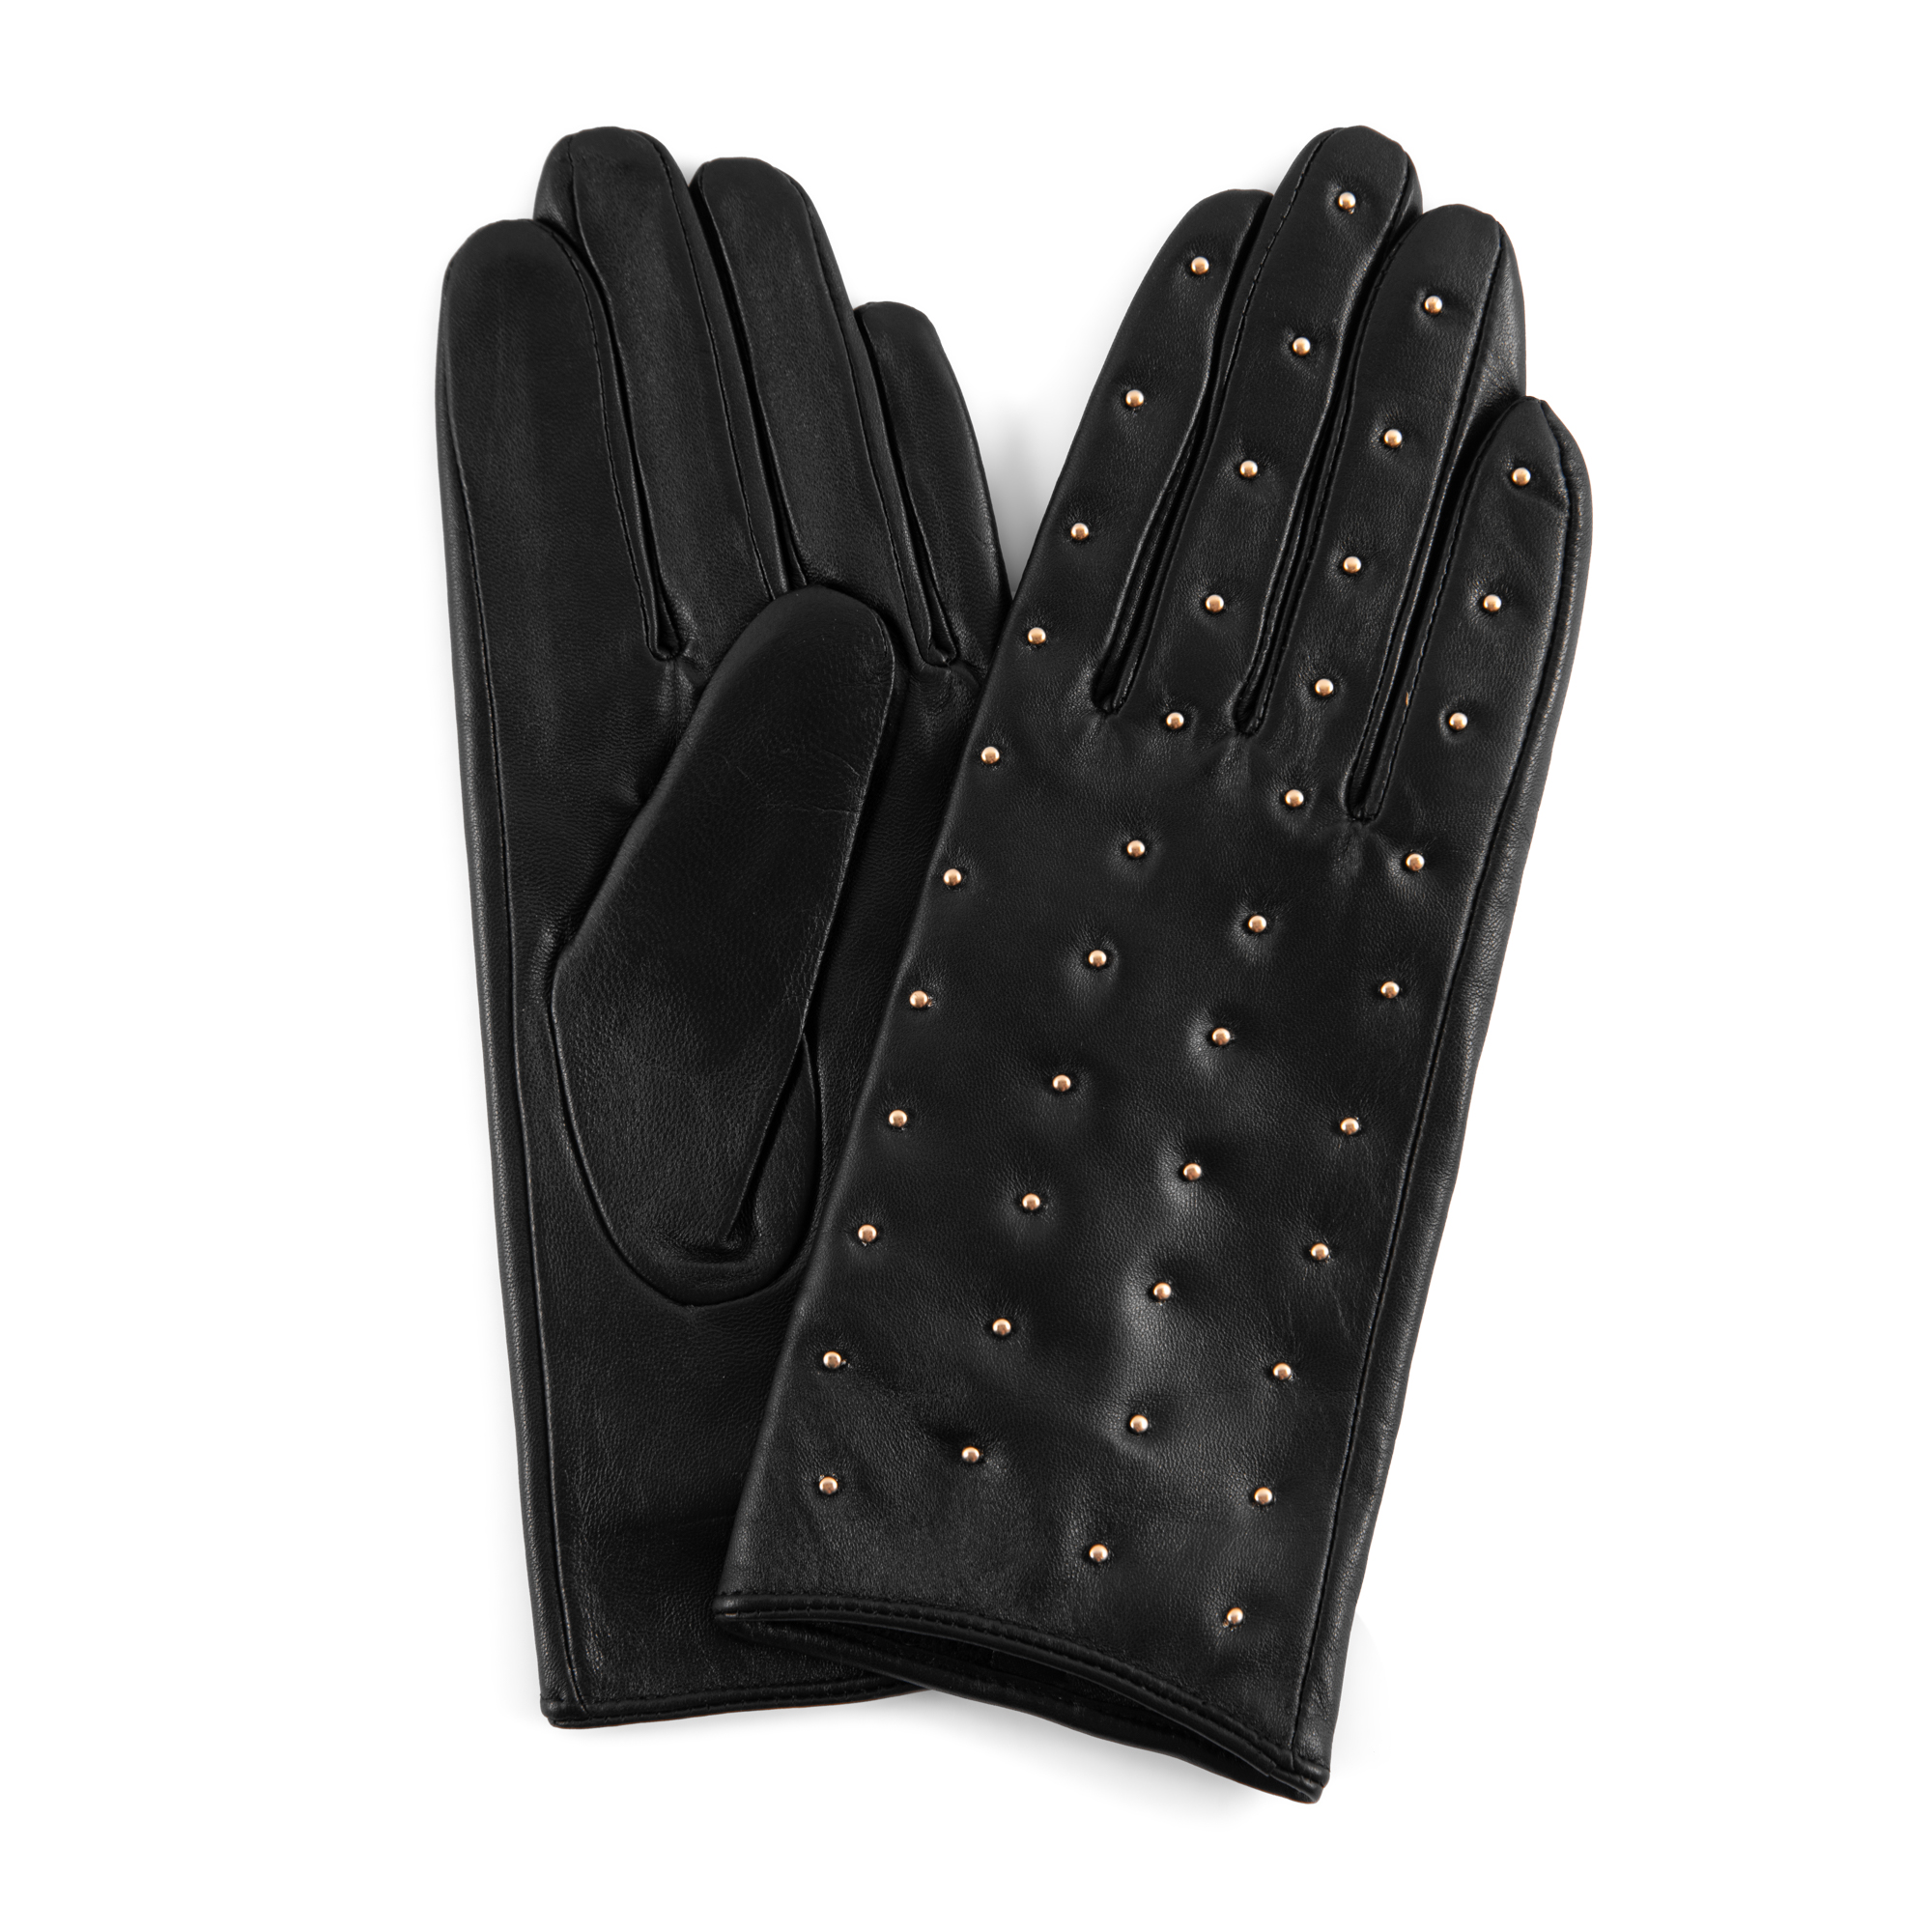 Afskedigelse Selvforkælelse falme Depeche - Handske i sort skind med guldnitter - HANDSKER - Como Shoes